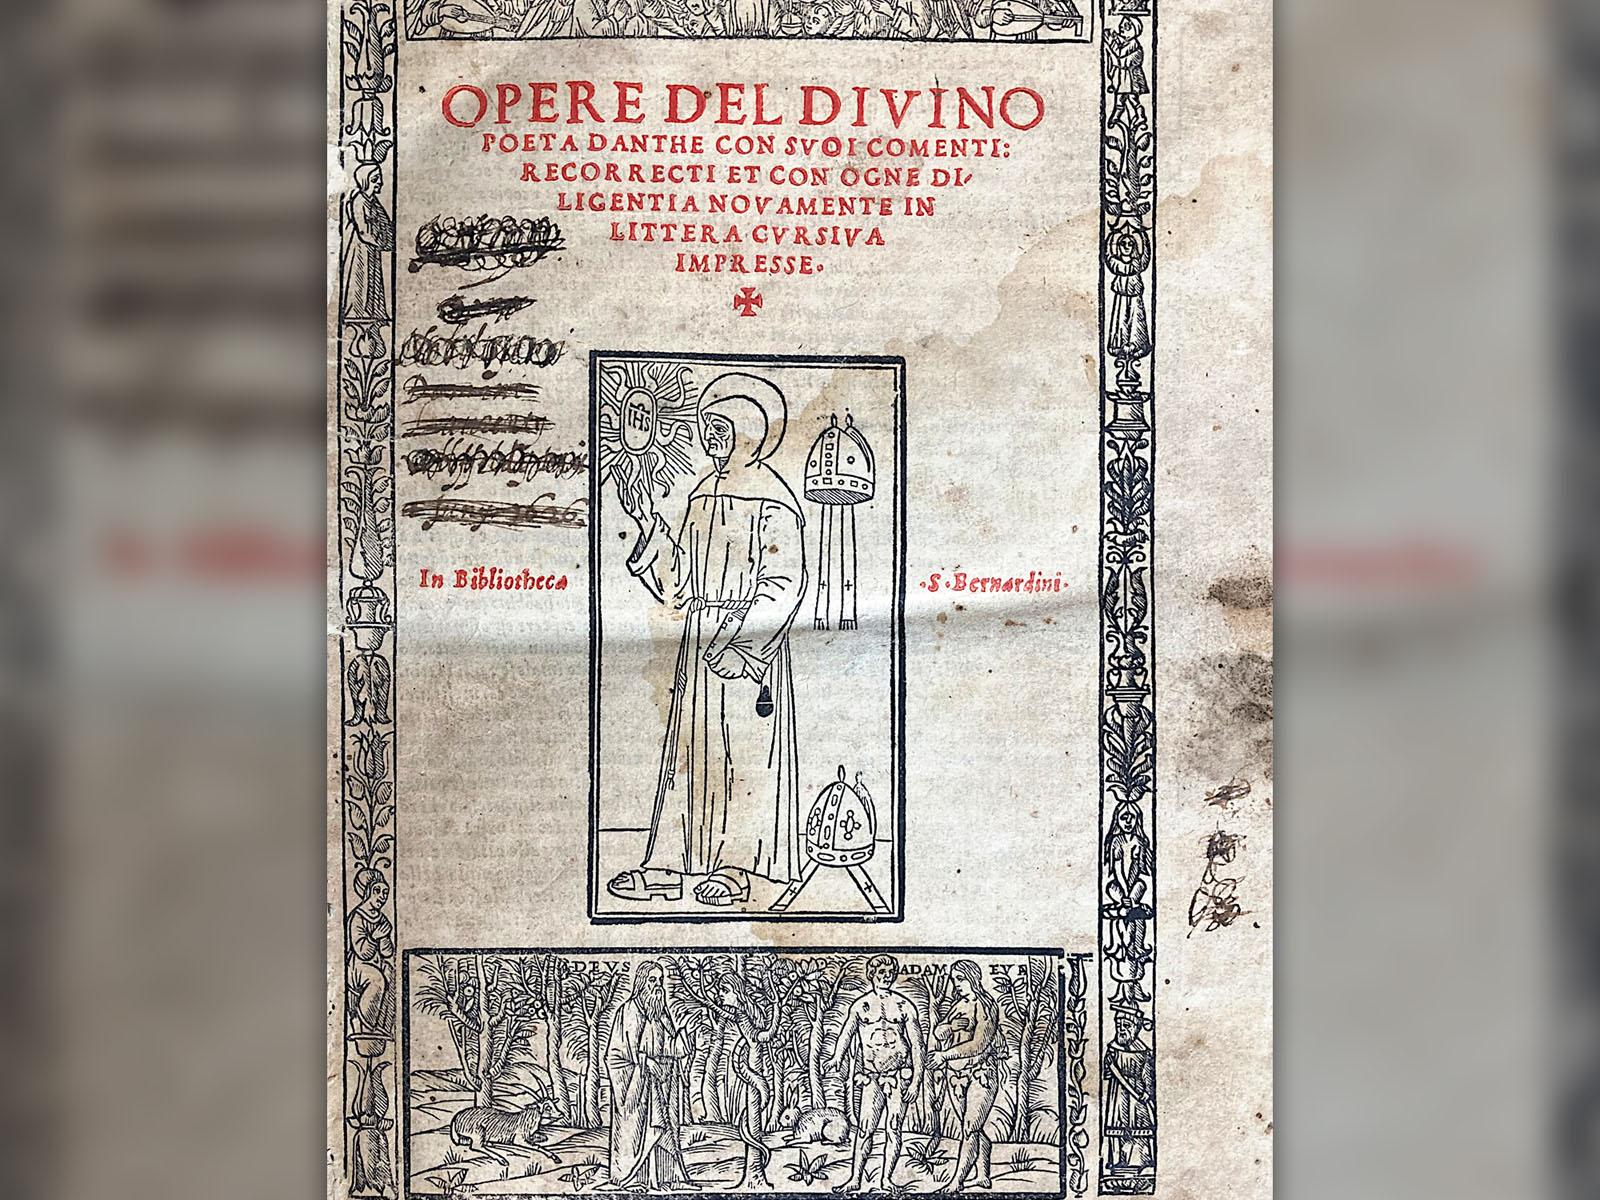 Une page du livre de Dante la "Divine Comédie"